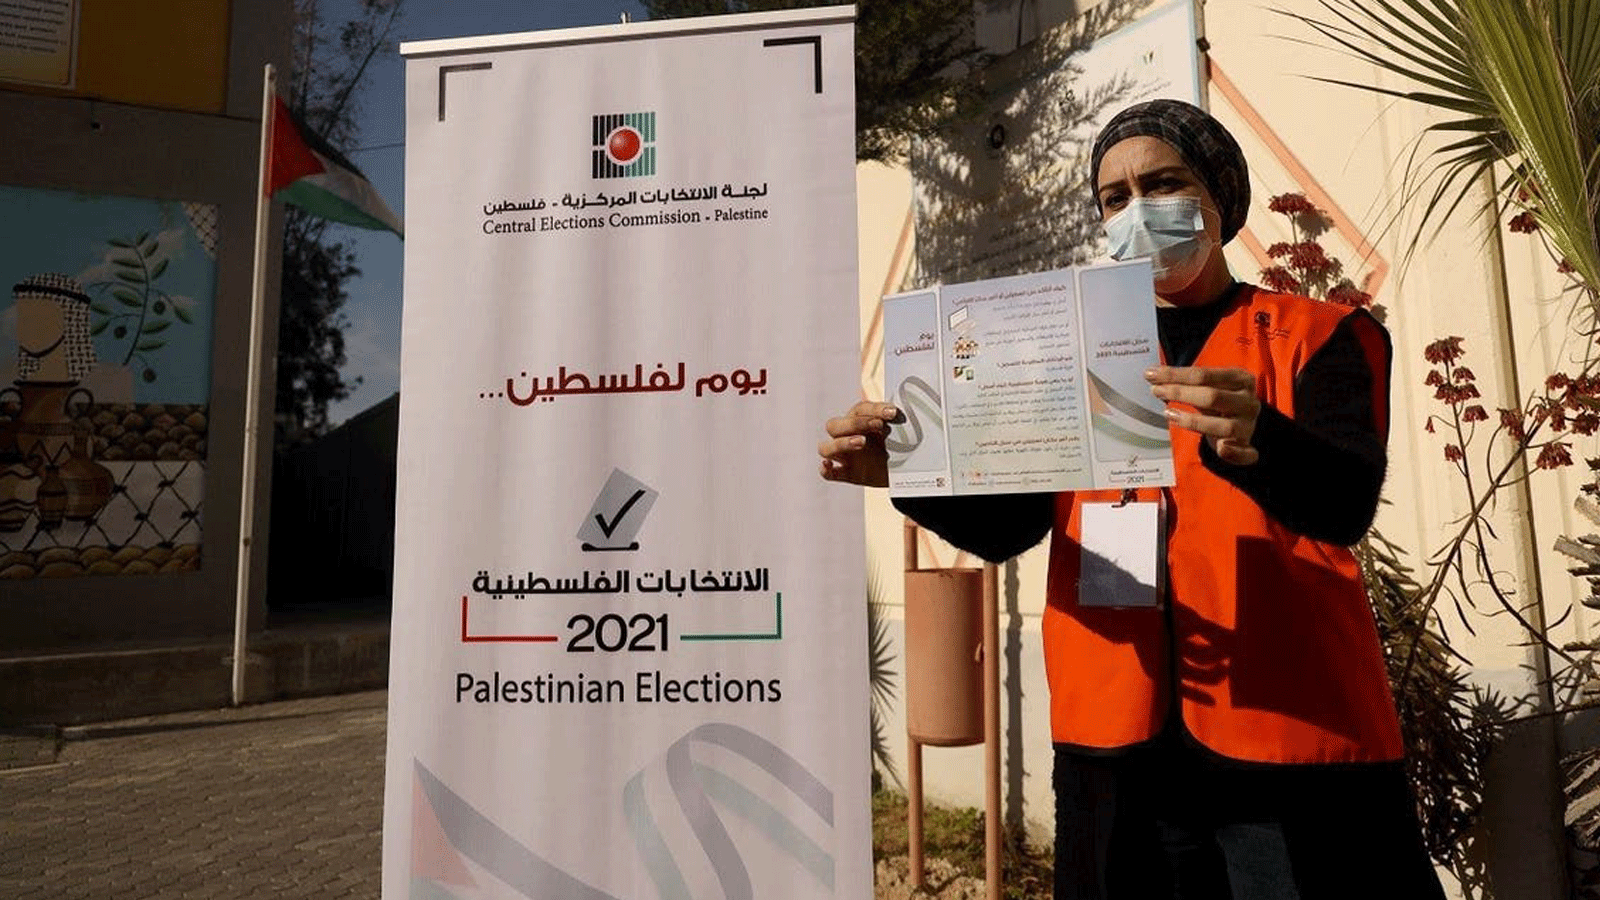 سيدة فلسطينية هي عضو في لجنة الانتخابات المركزية تعرض نشرة إعلامية بعد افتتاح مركز معلومات وتسجيل الناخبين الأول في مدينة غزة في 10 شباط /فبراير2021